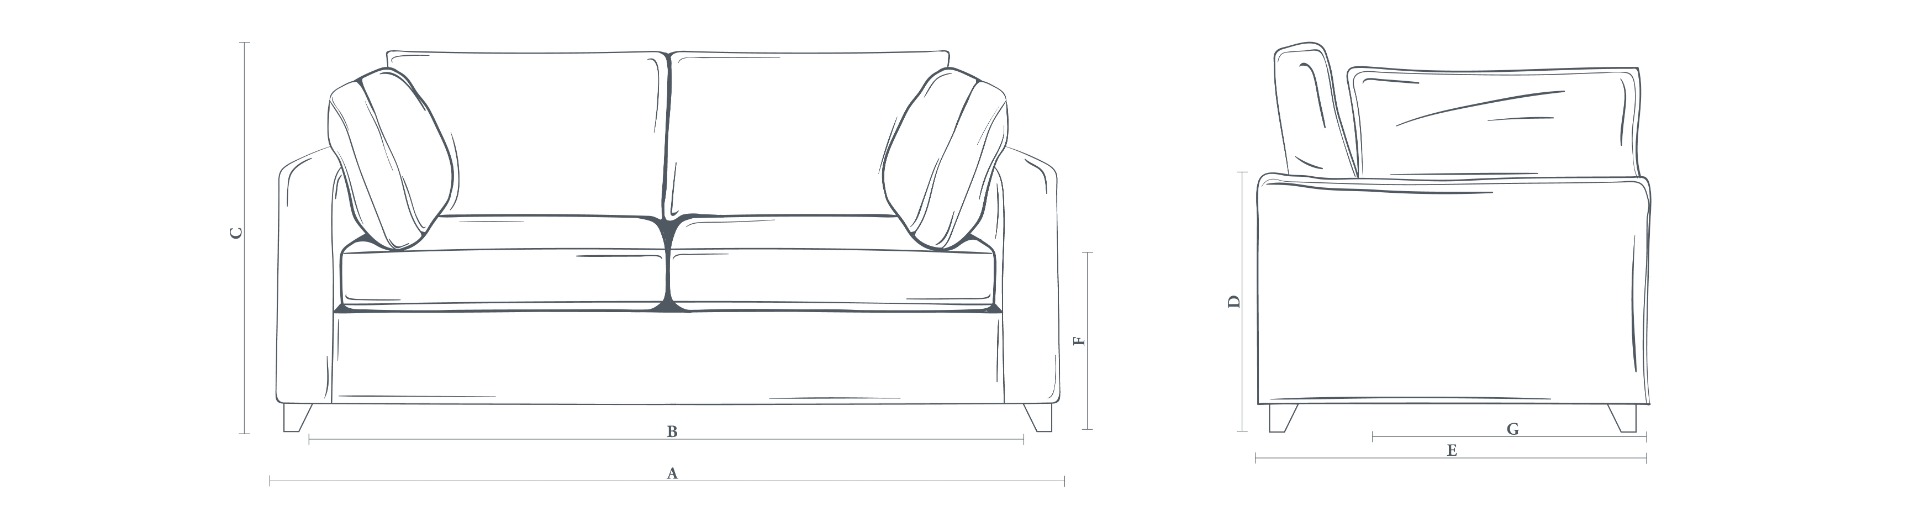 The Somerton Sofa 3.5 Seater